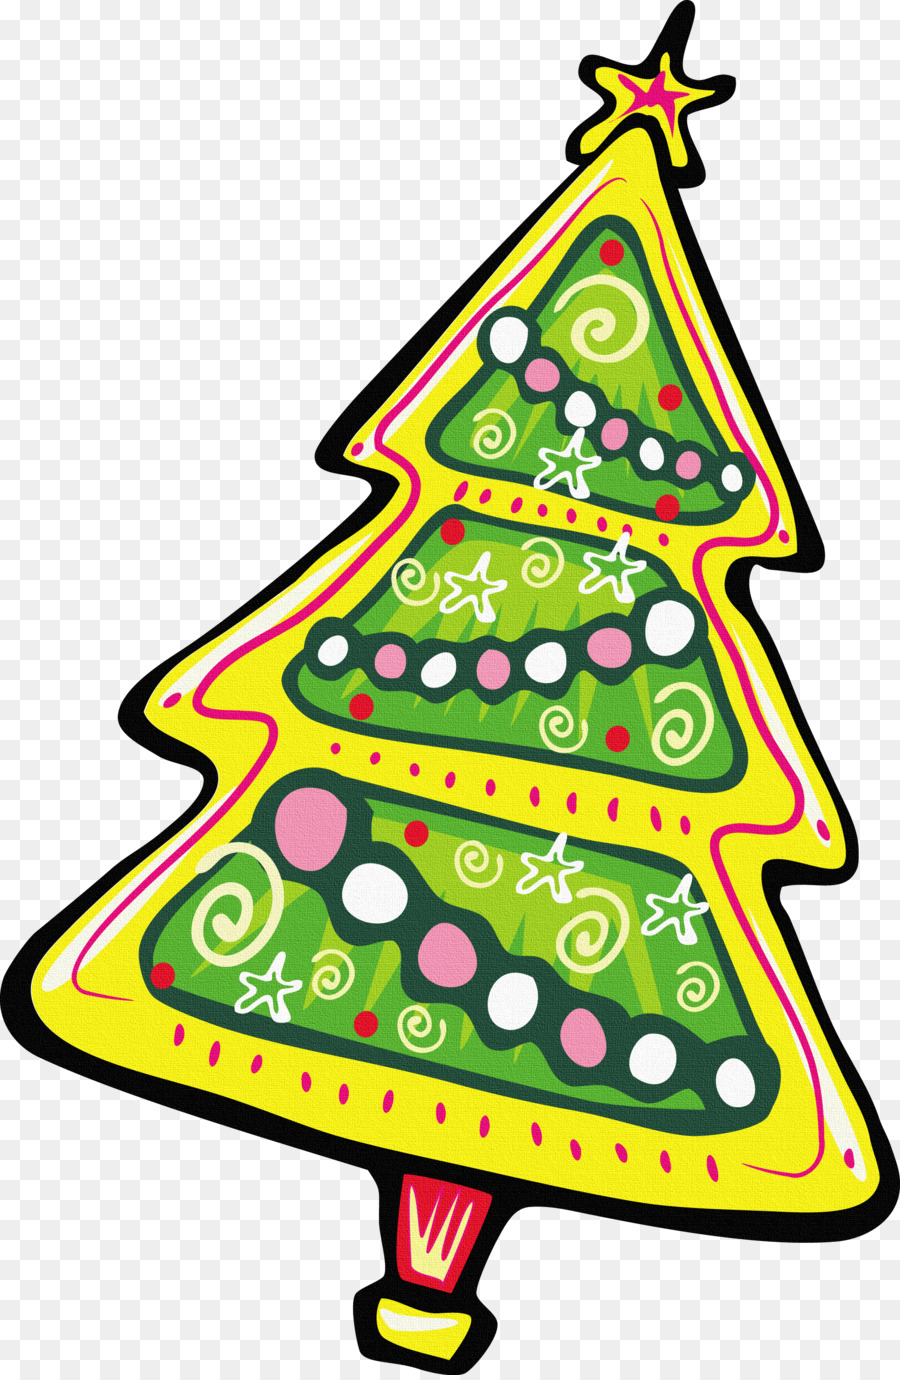 Weihnachtsbaum tannenbaum Clip art - Weihnachtsbaum